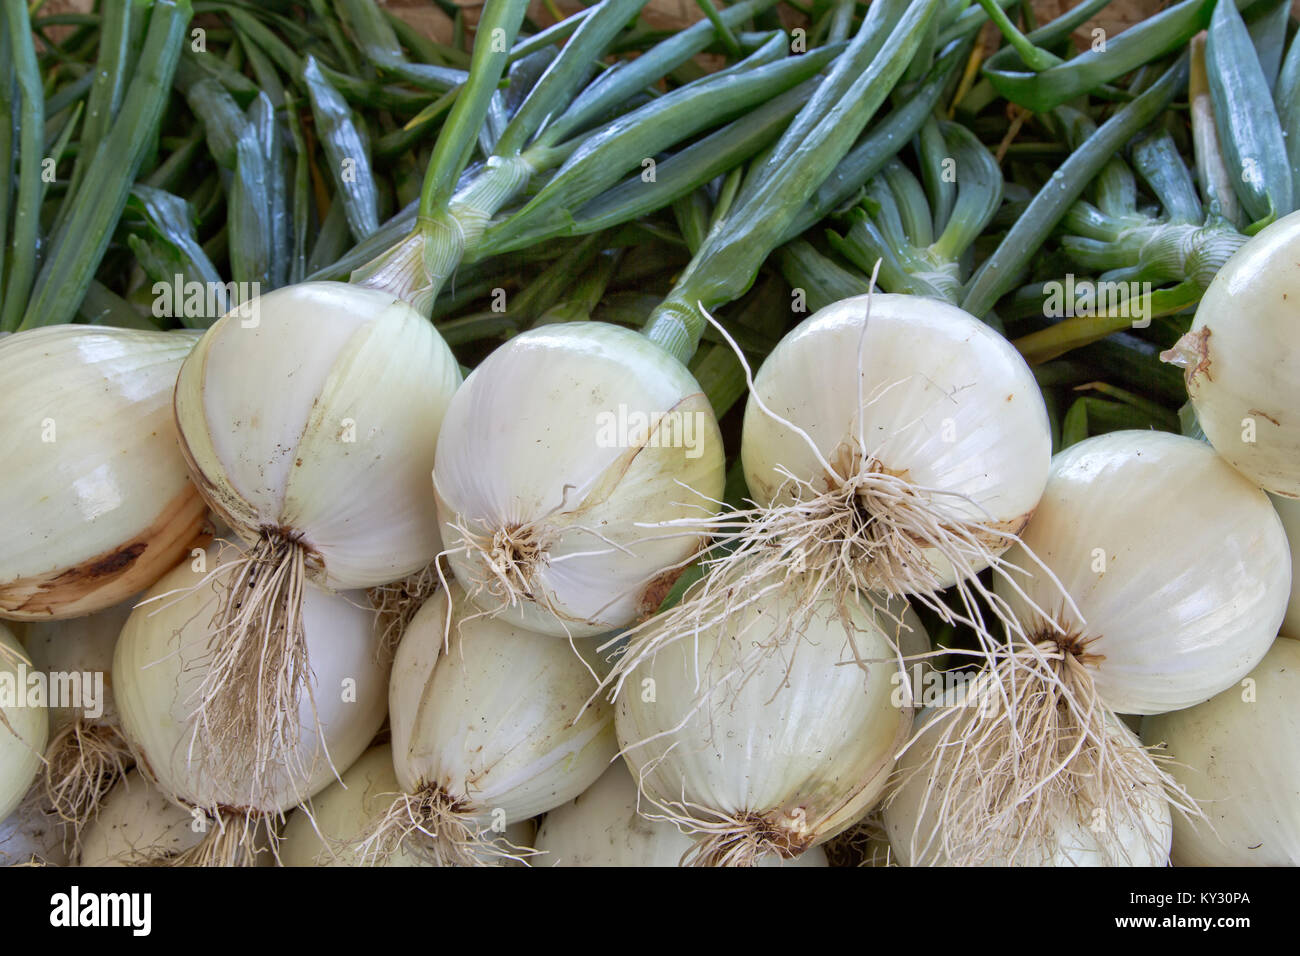 Ailsa Craig 'oignons récoltés Allium cepa". Banque D'Images